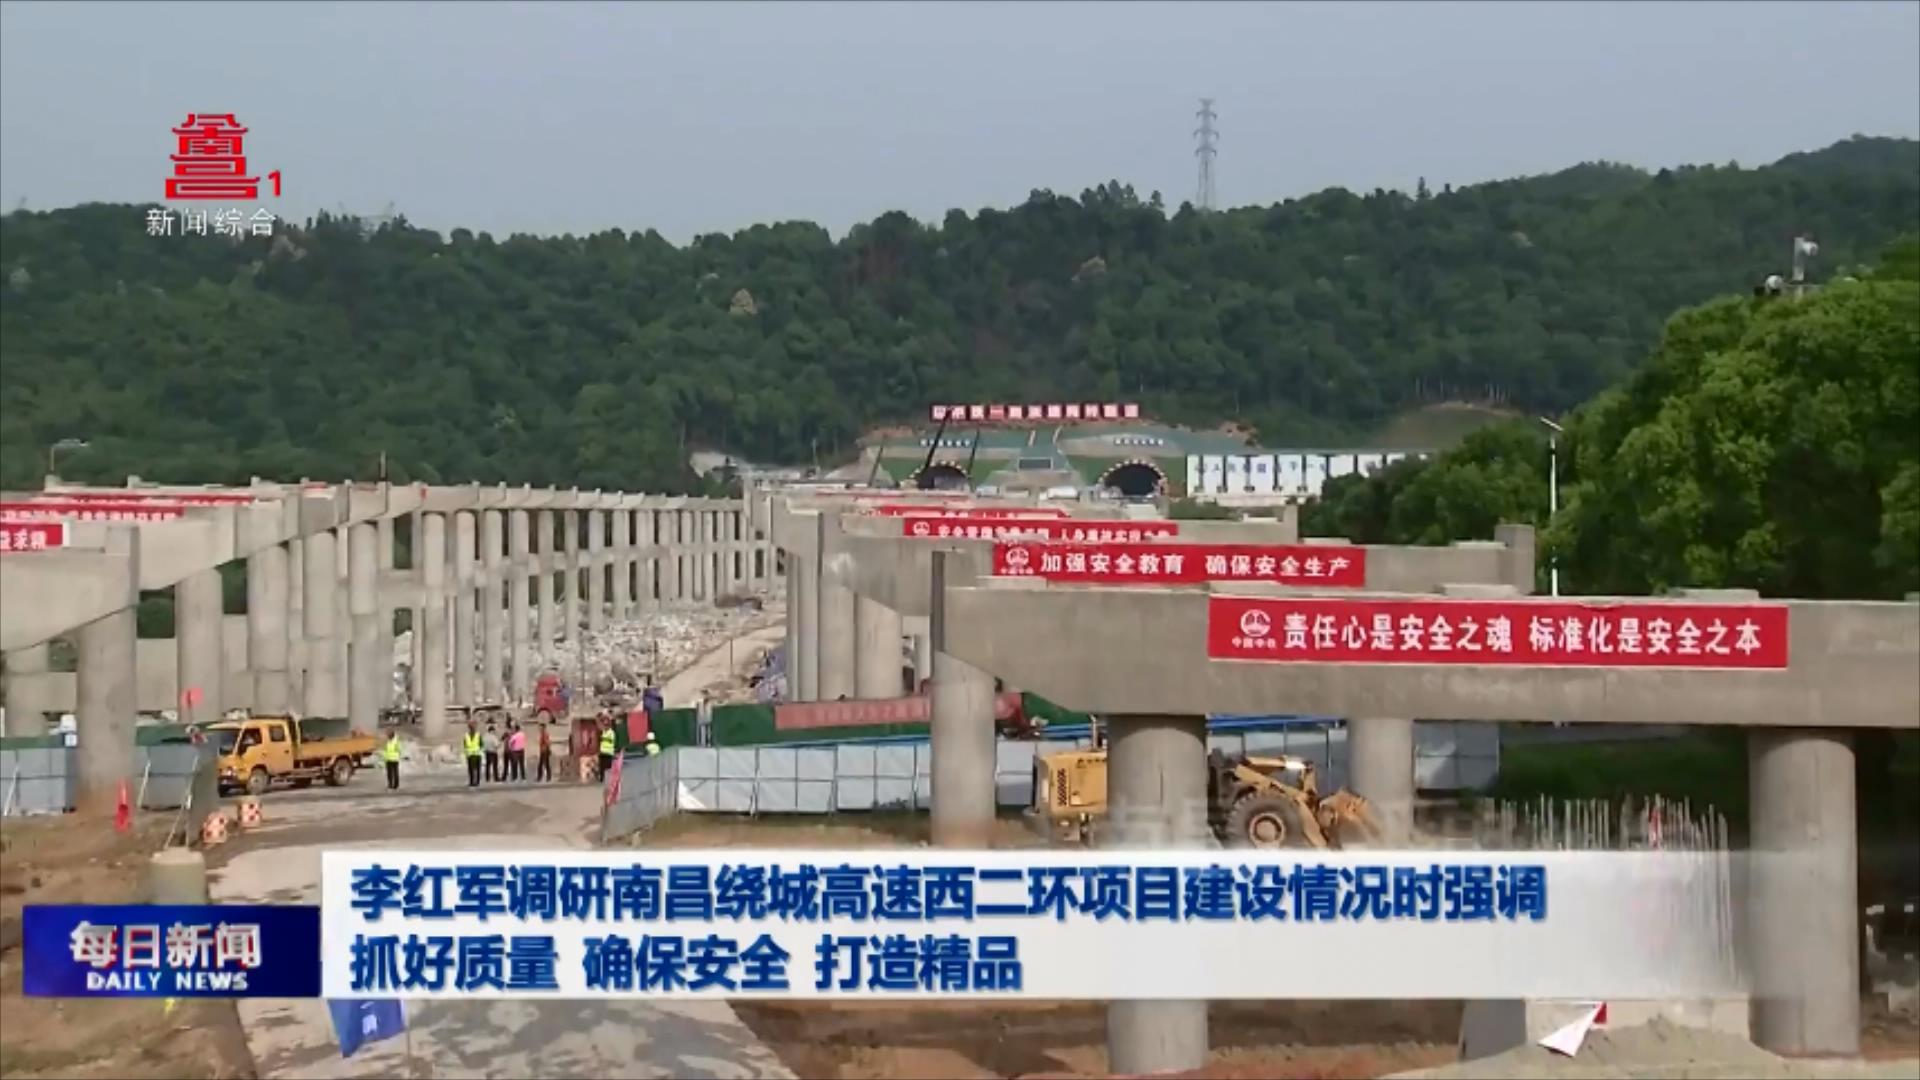 李红军调研南昌绕城高速西二环项目建设情况时强调 抓好质量 确保安全 打造精品